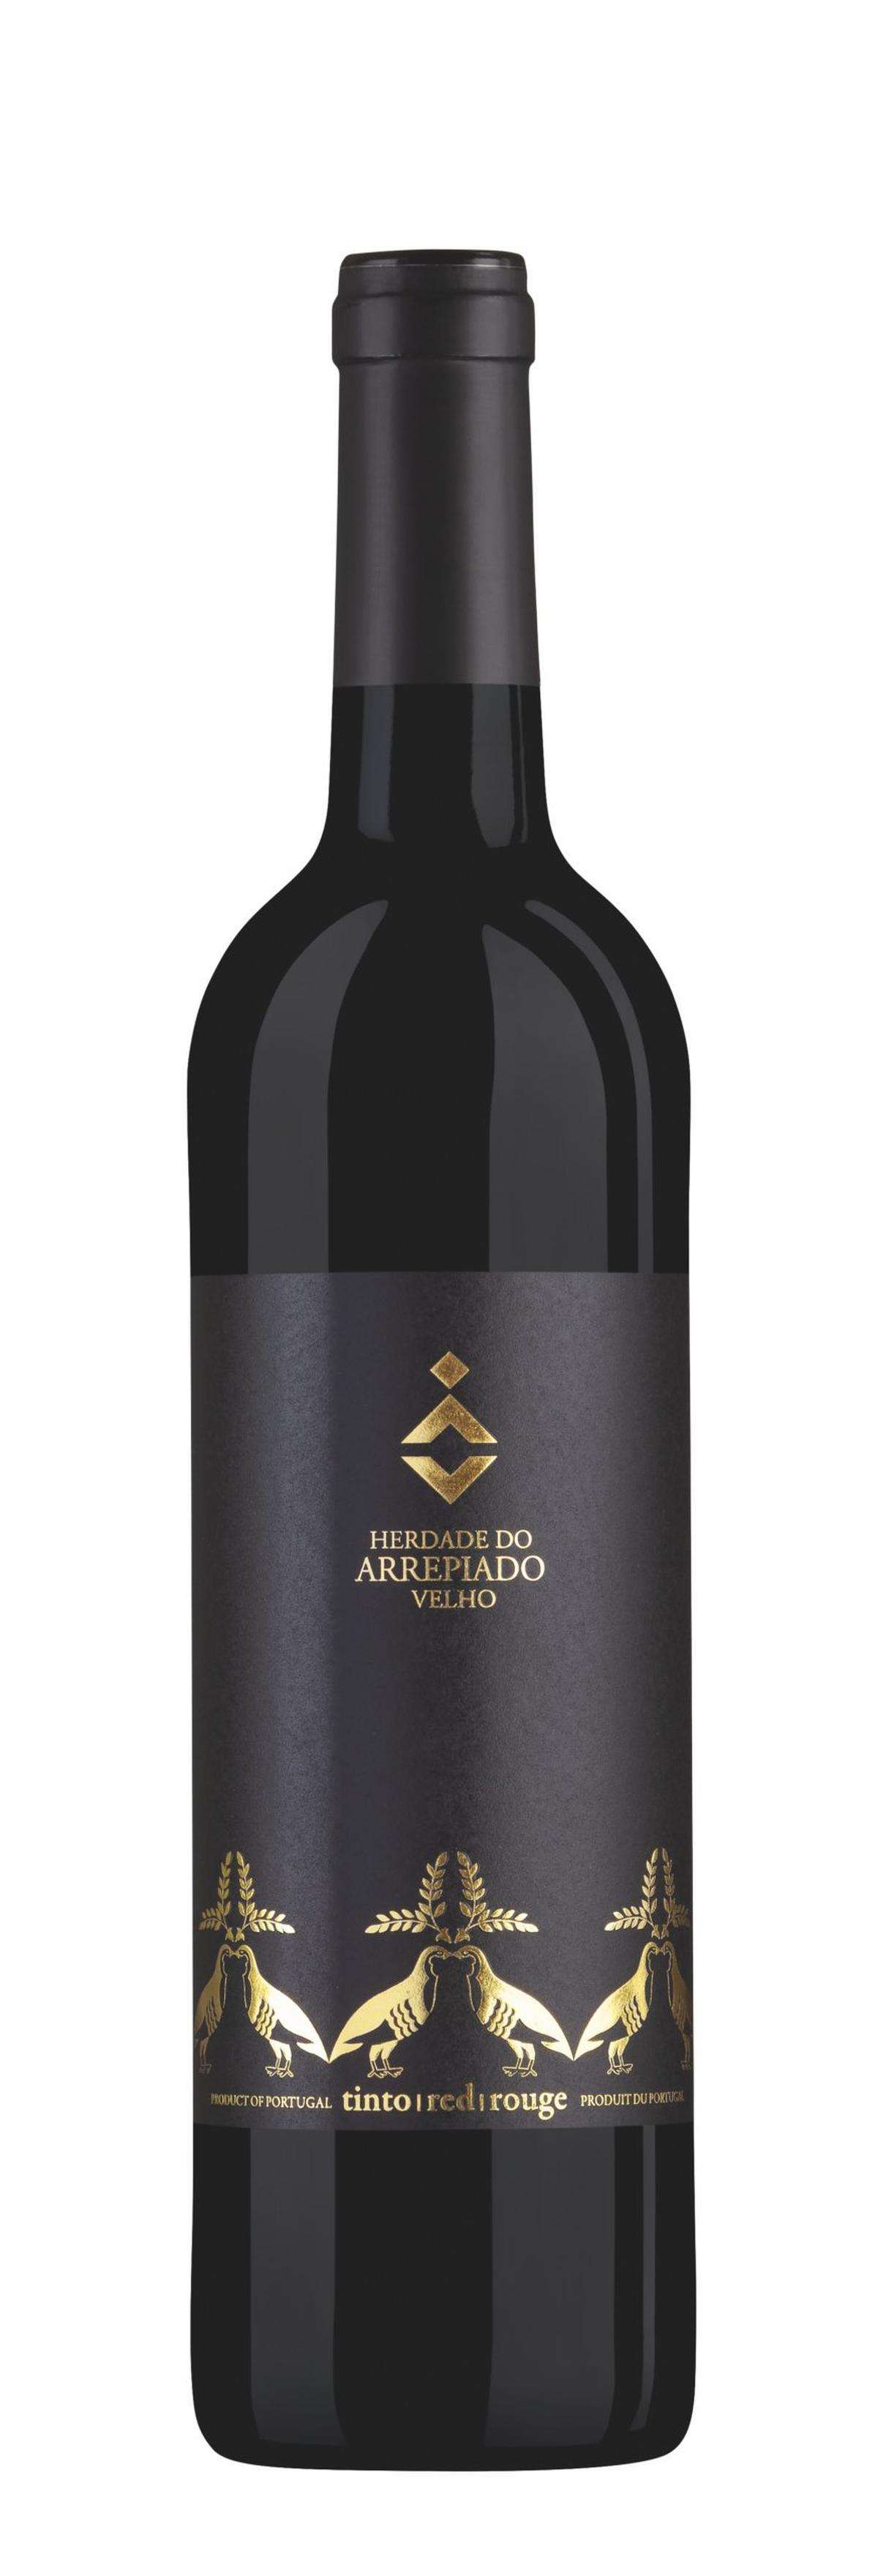 Der Velho Tinto ist ein portugiesischer Rotwein aus der Region Alentejo-Weine-top 10.